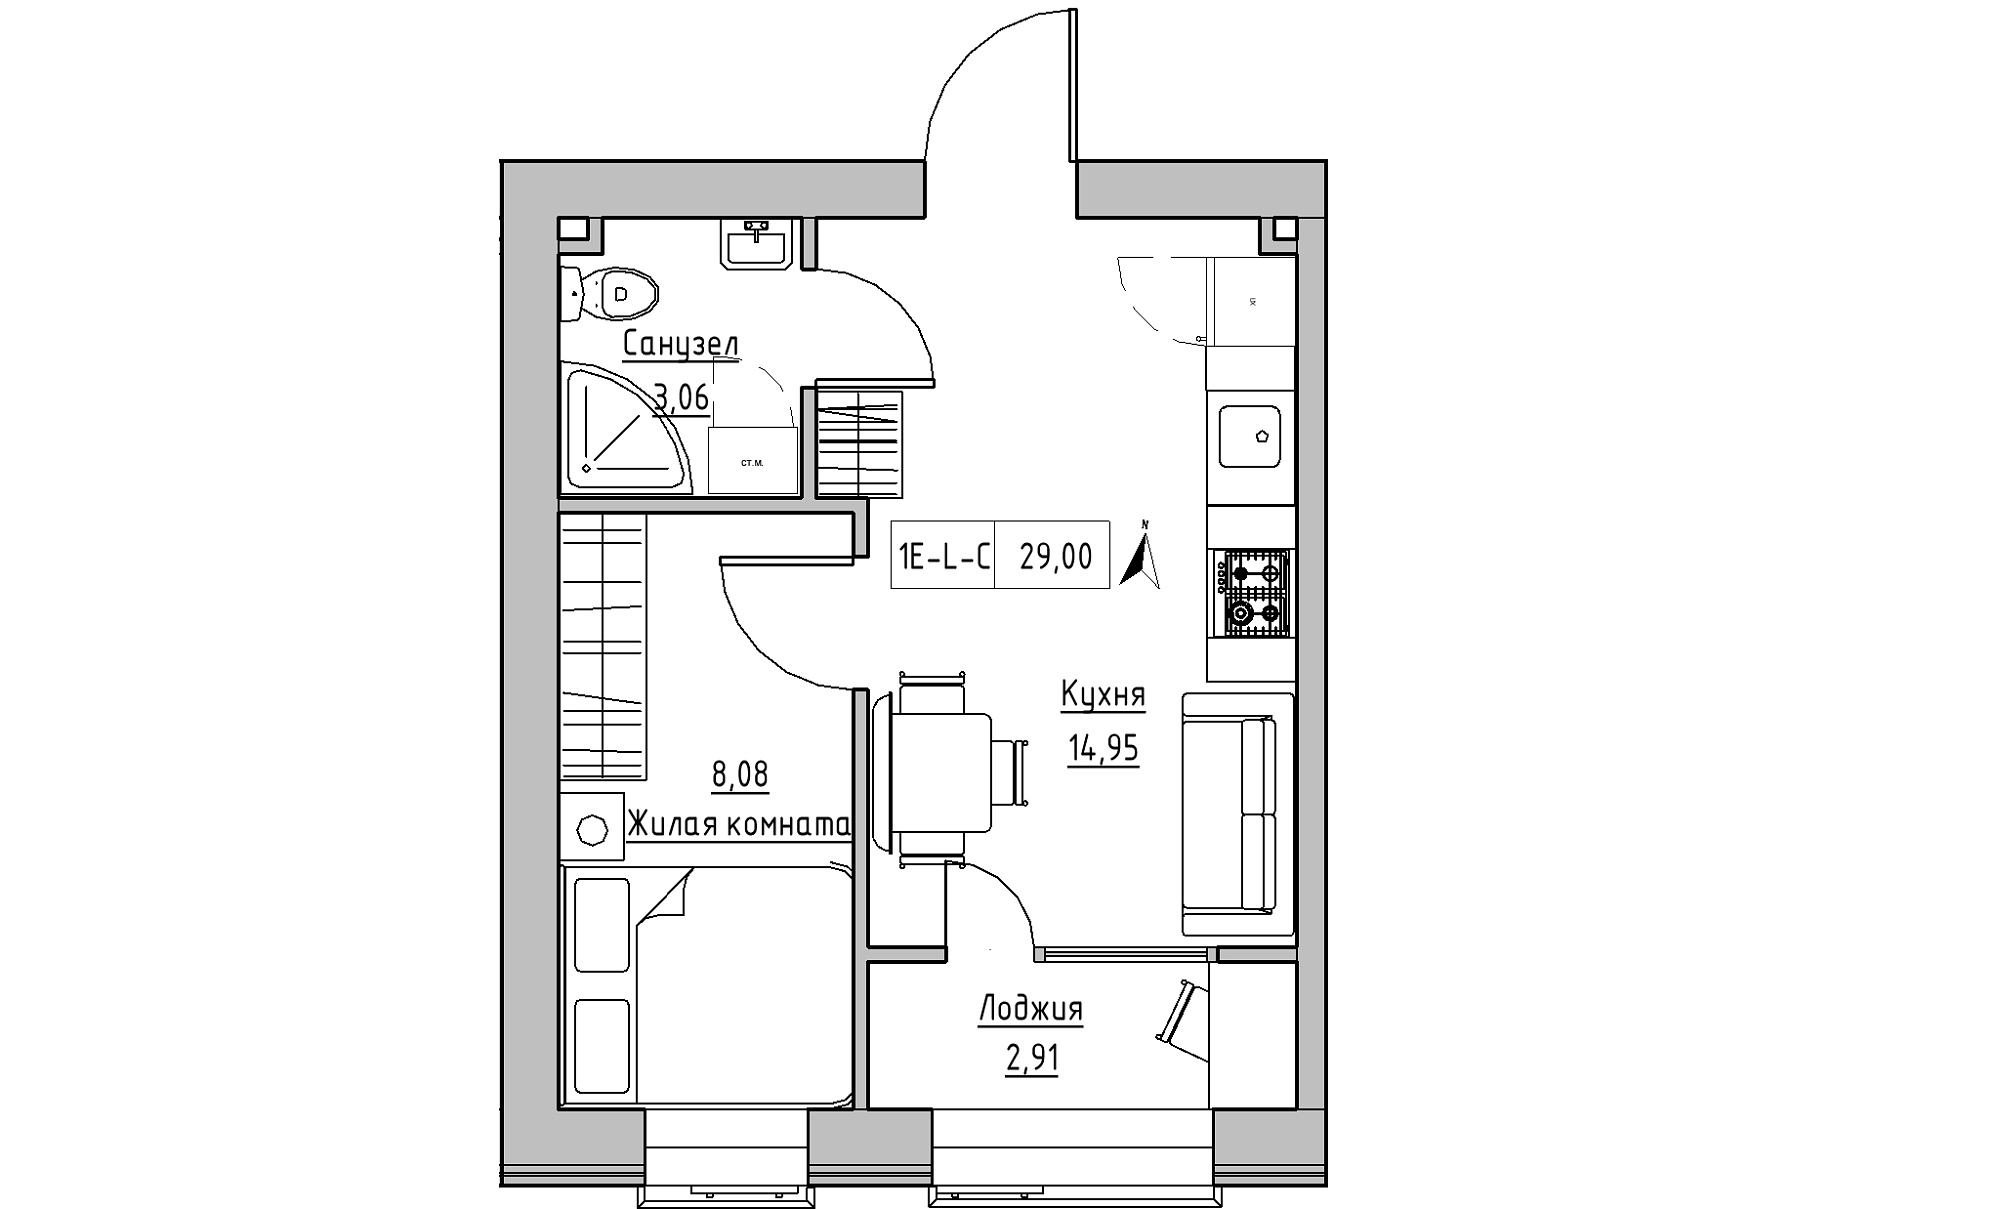 Планування 1-к квартира площею 29м2, KS-016-02/0007.